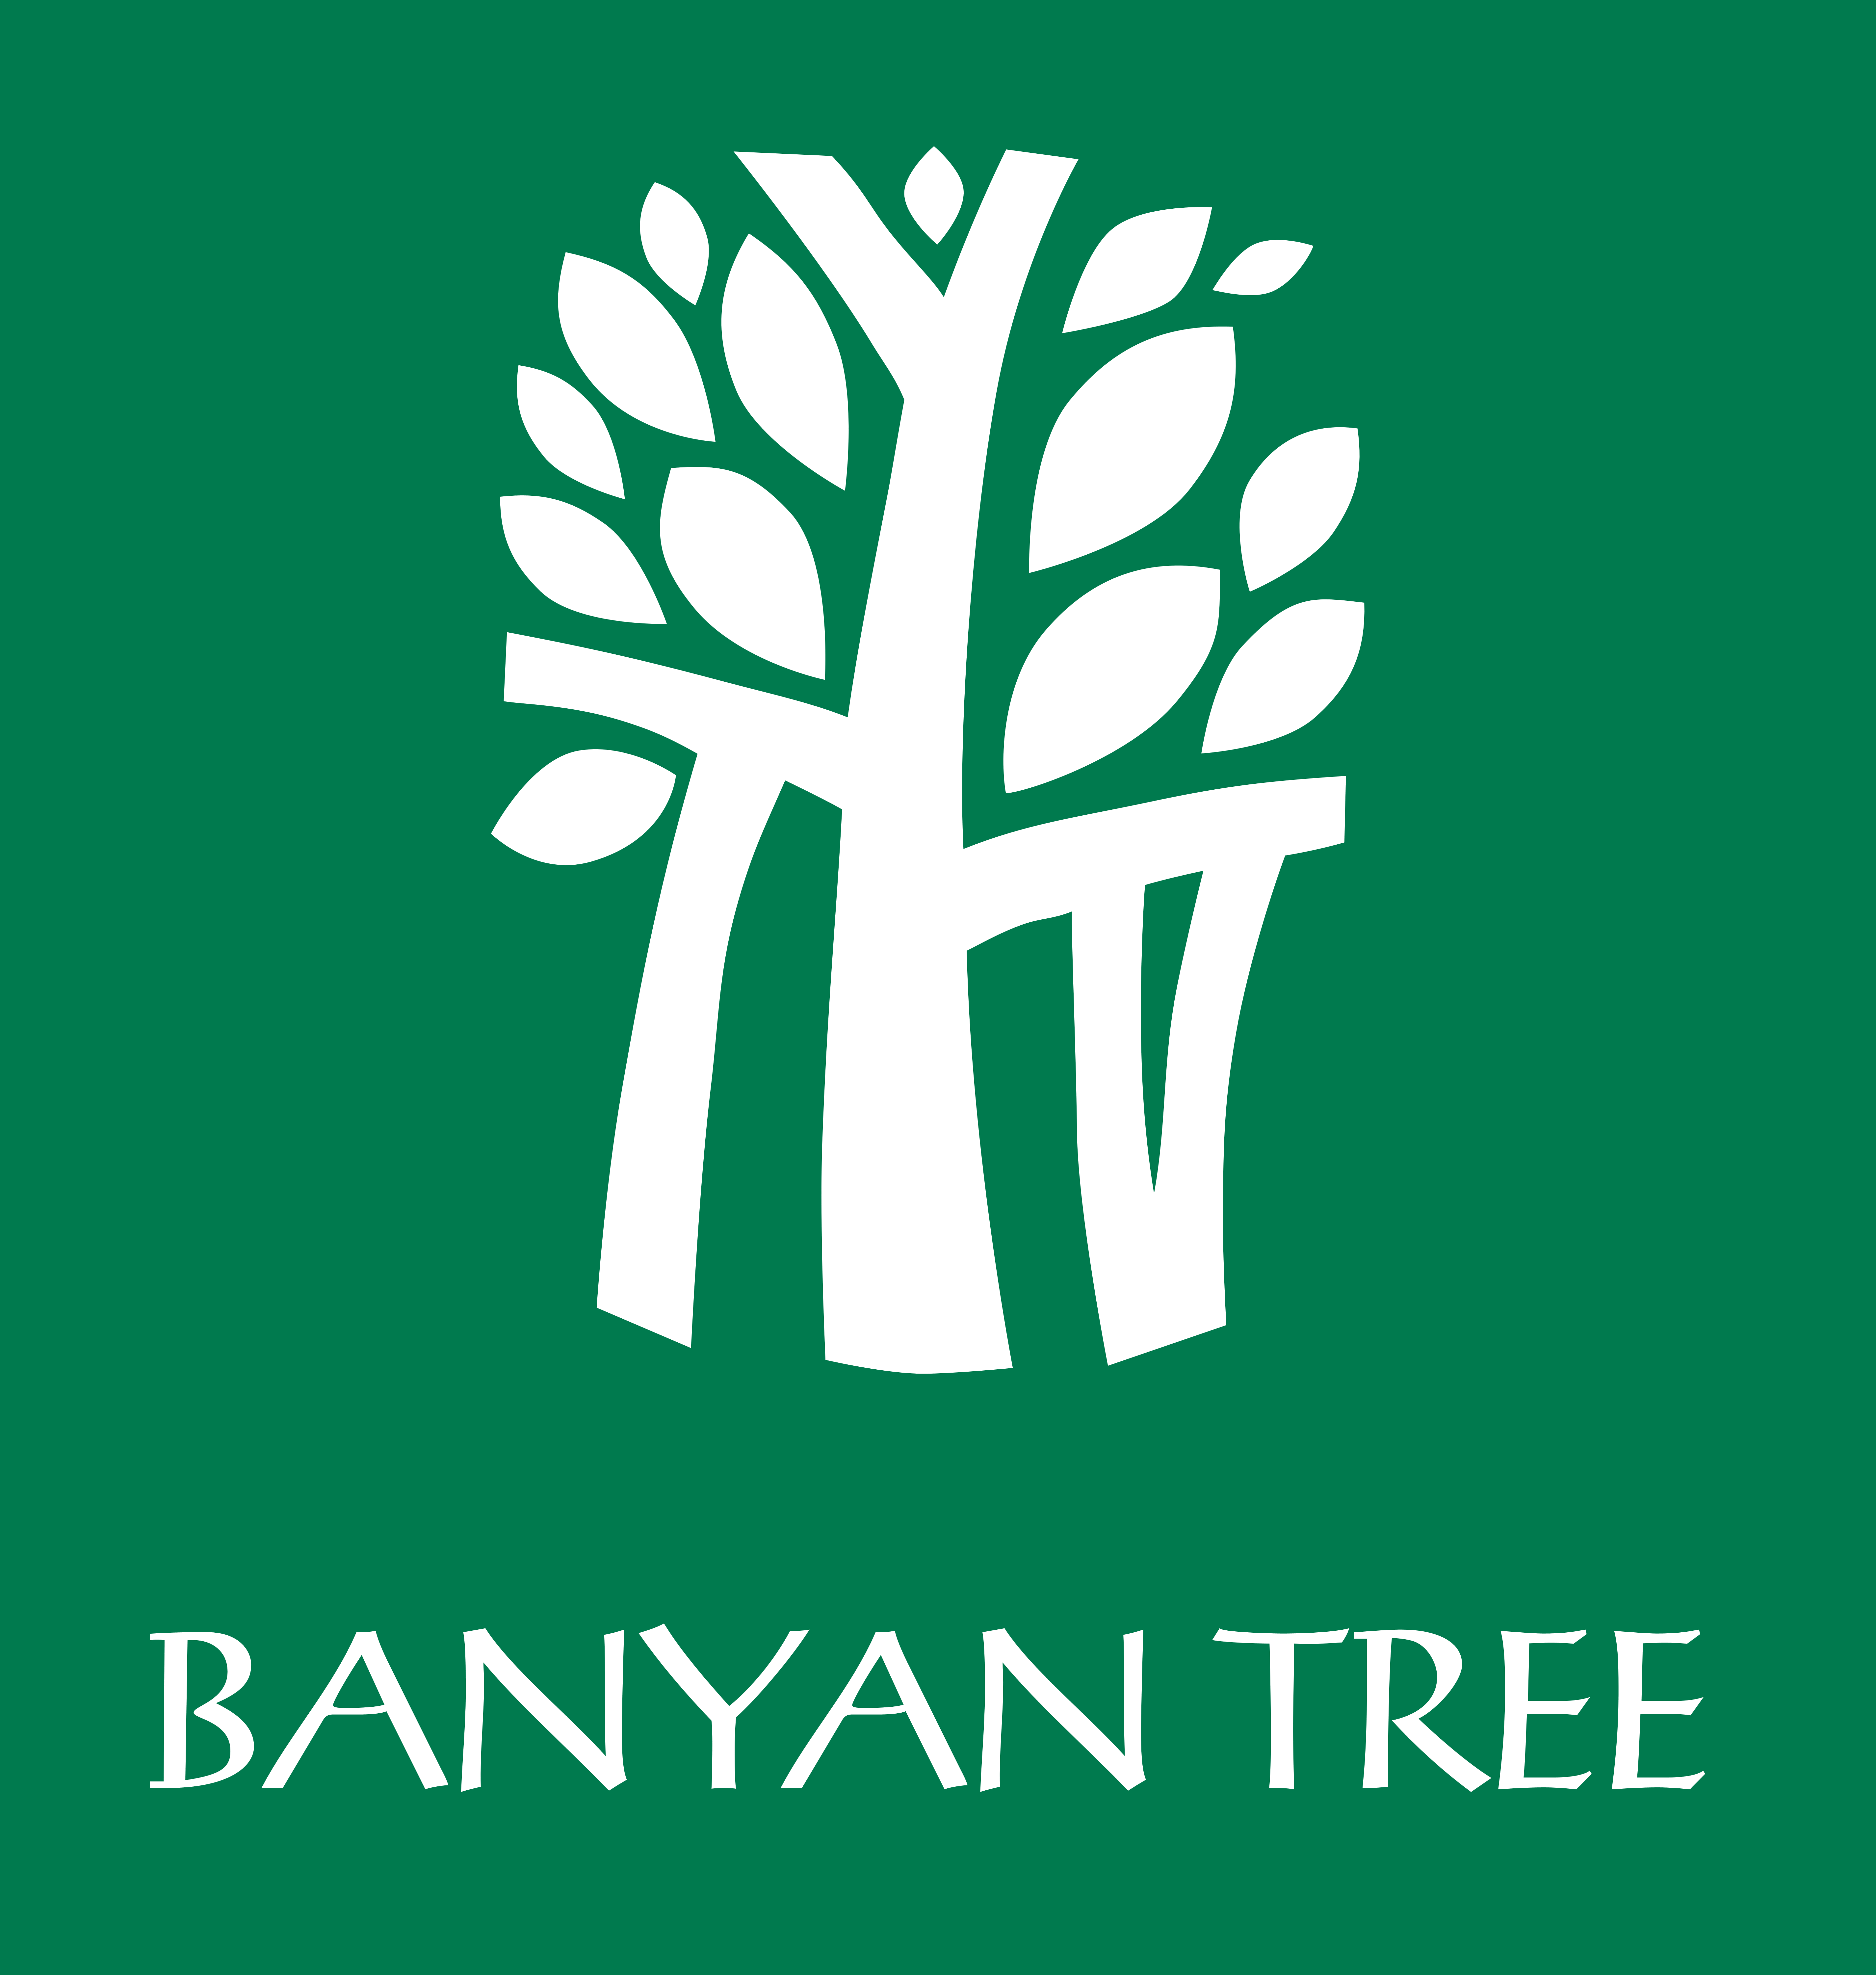 Banyan Tree – Logos Download